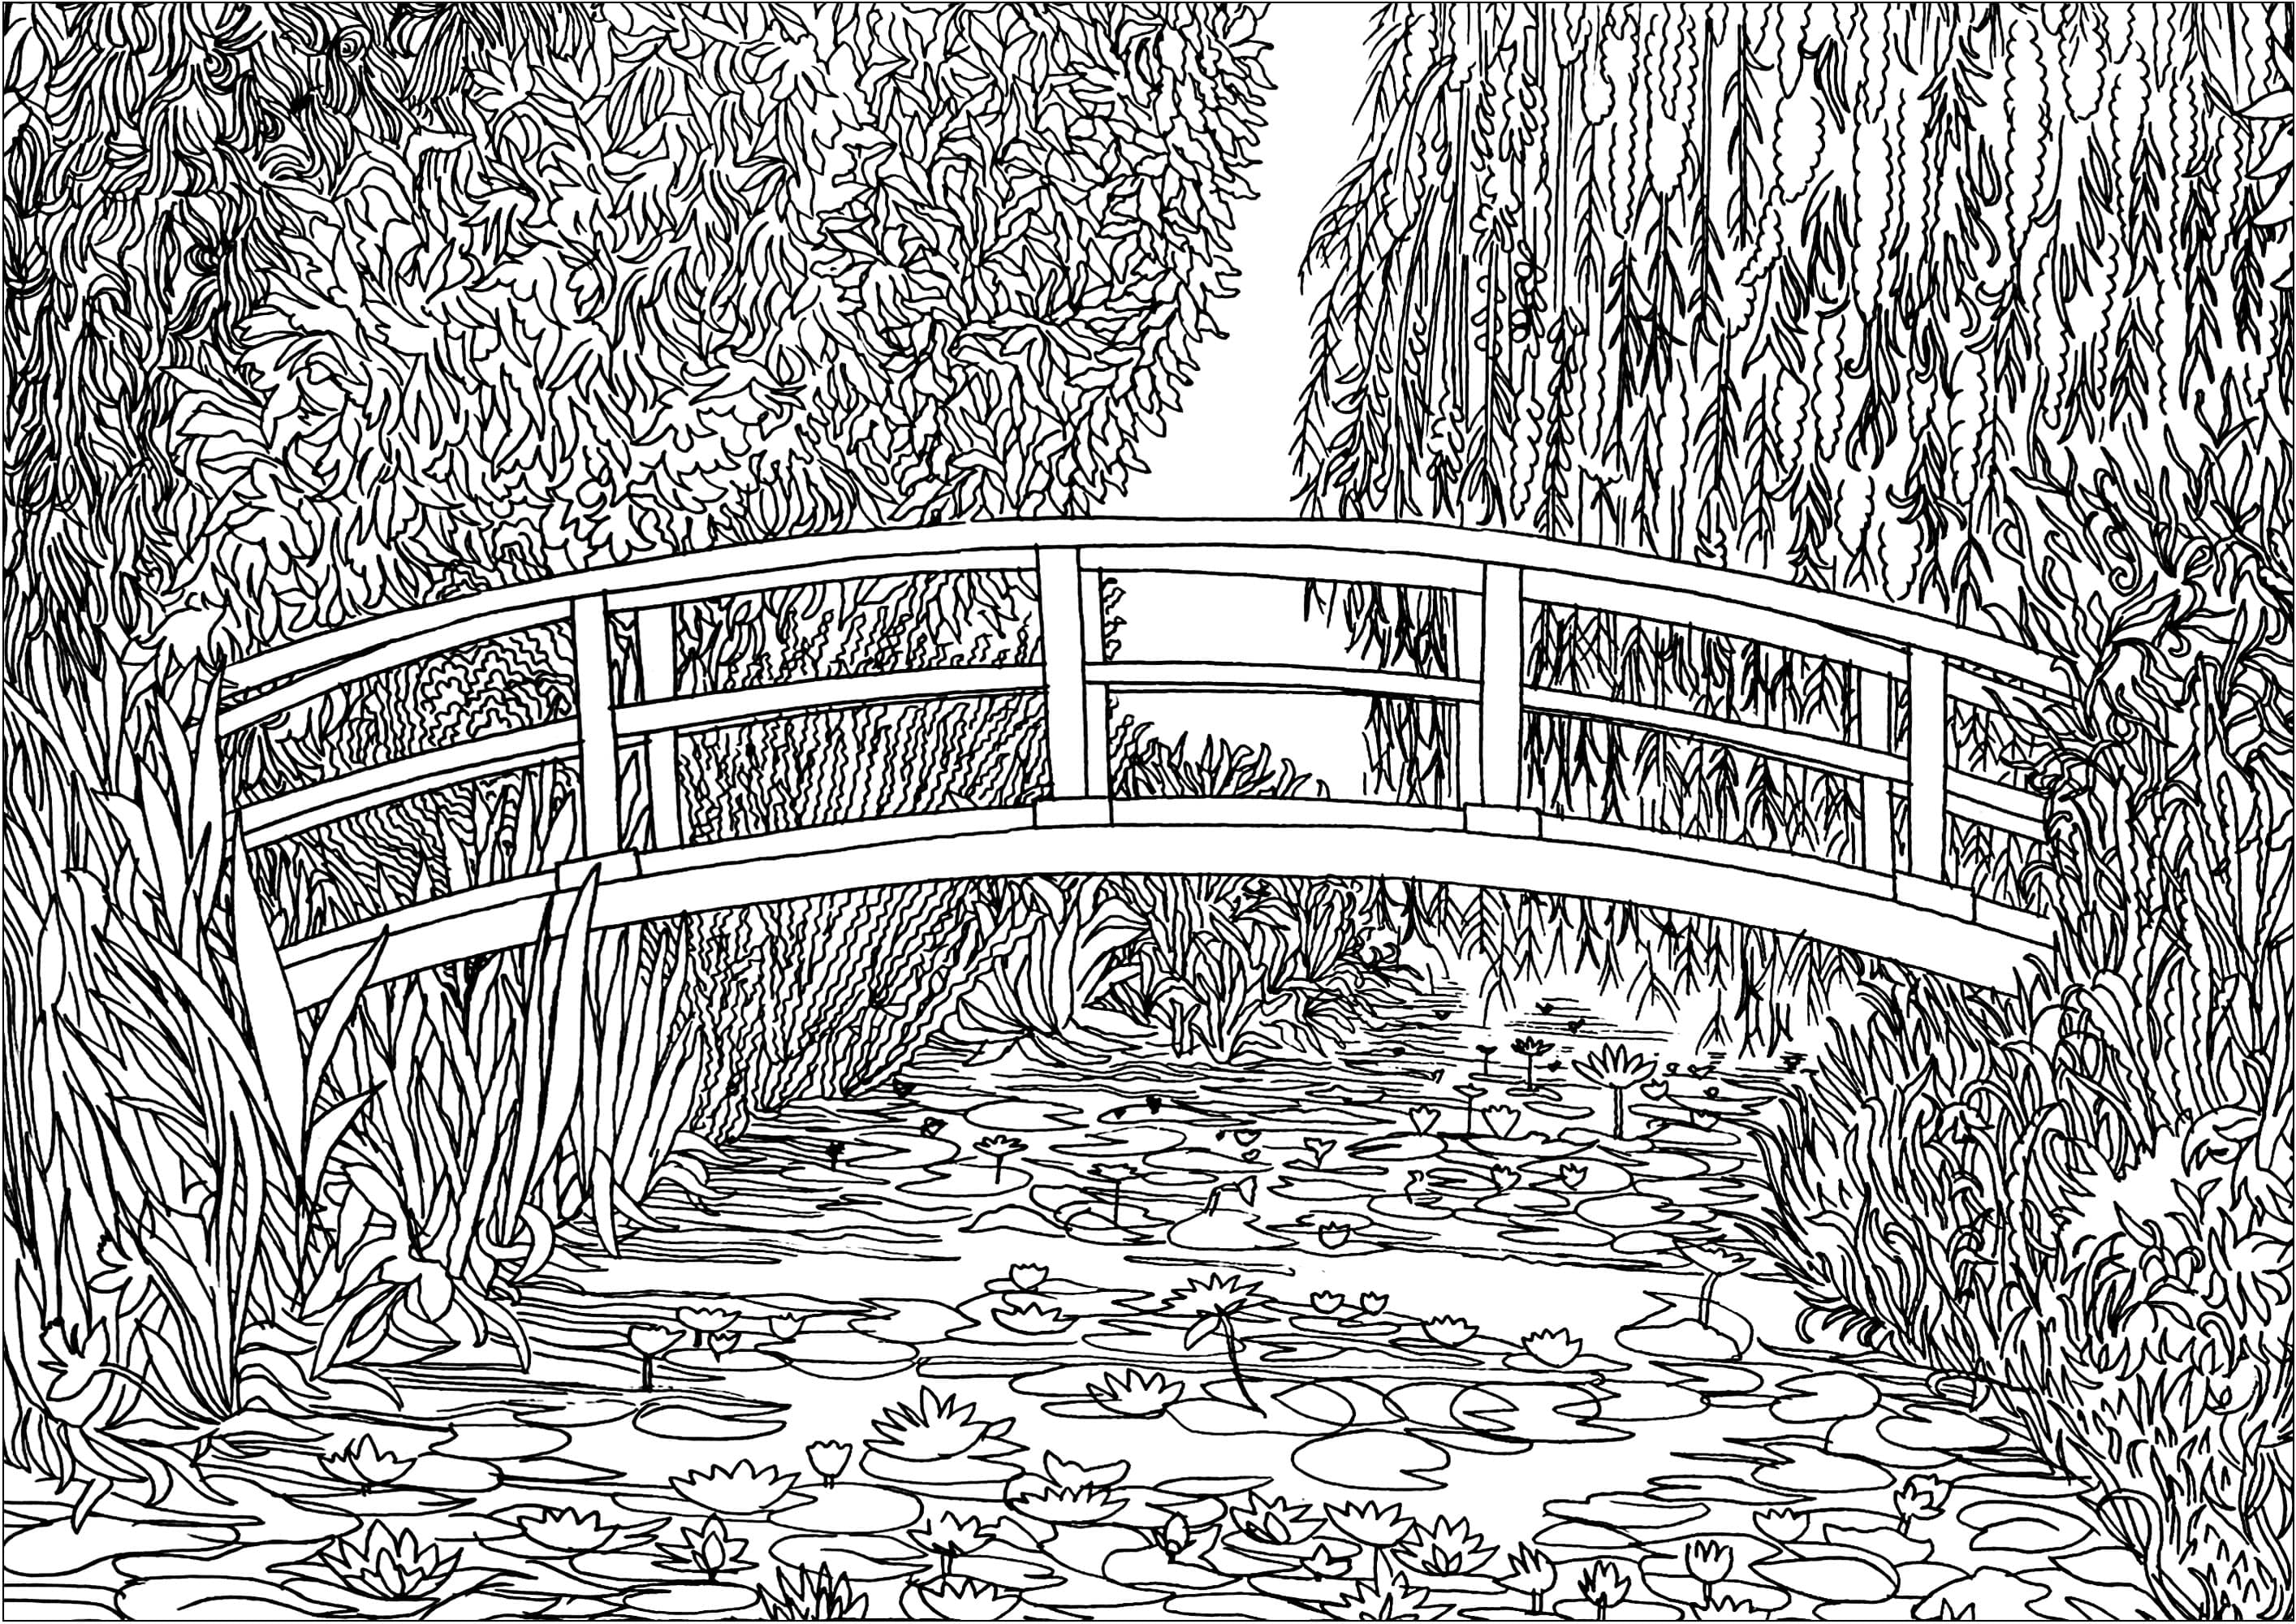 Coloreado basado en 'Le bassin aux nymphéas' (1899) de Claude Monet. En 1893, Monet, pintor pero también horticultor apasionado, compró un terreno con un estanque cerca de su propiedad en Giverny, con la intención de construir algo 'para el placer de los ojos y también para motivos que pintar'. El resultado fue su serie de cuadros que representan este magnífico estanque de nenúfares.